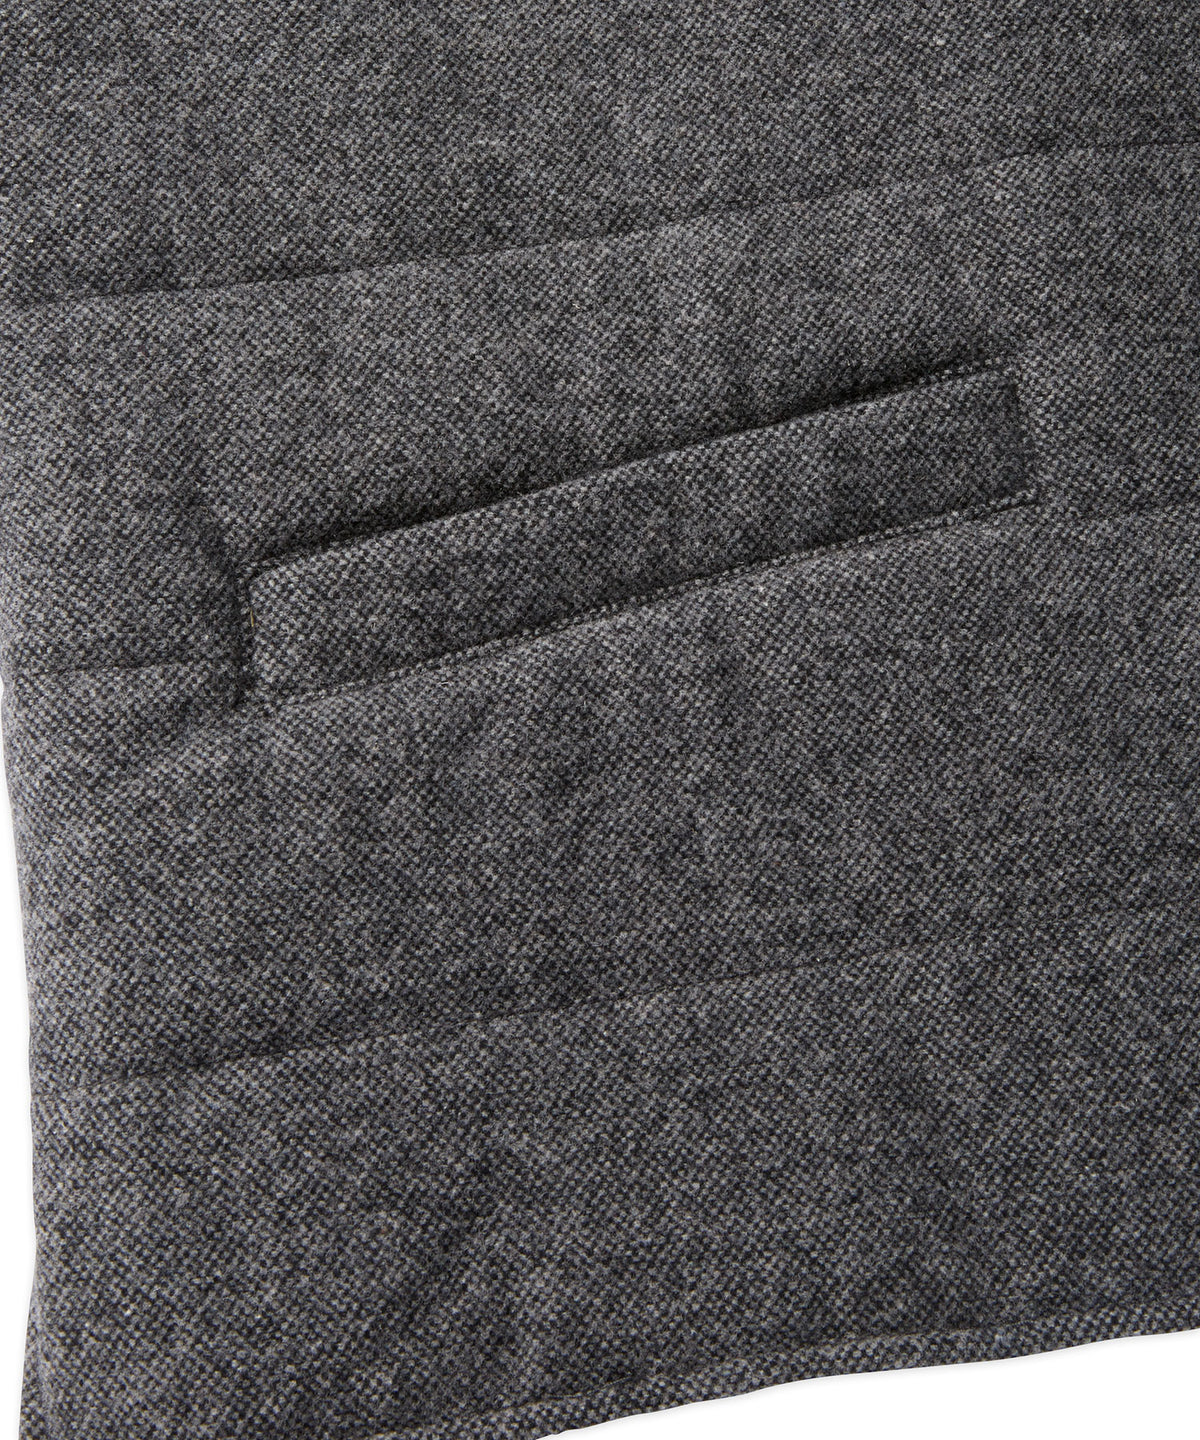 Wool Zip-Front Vest